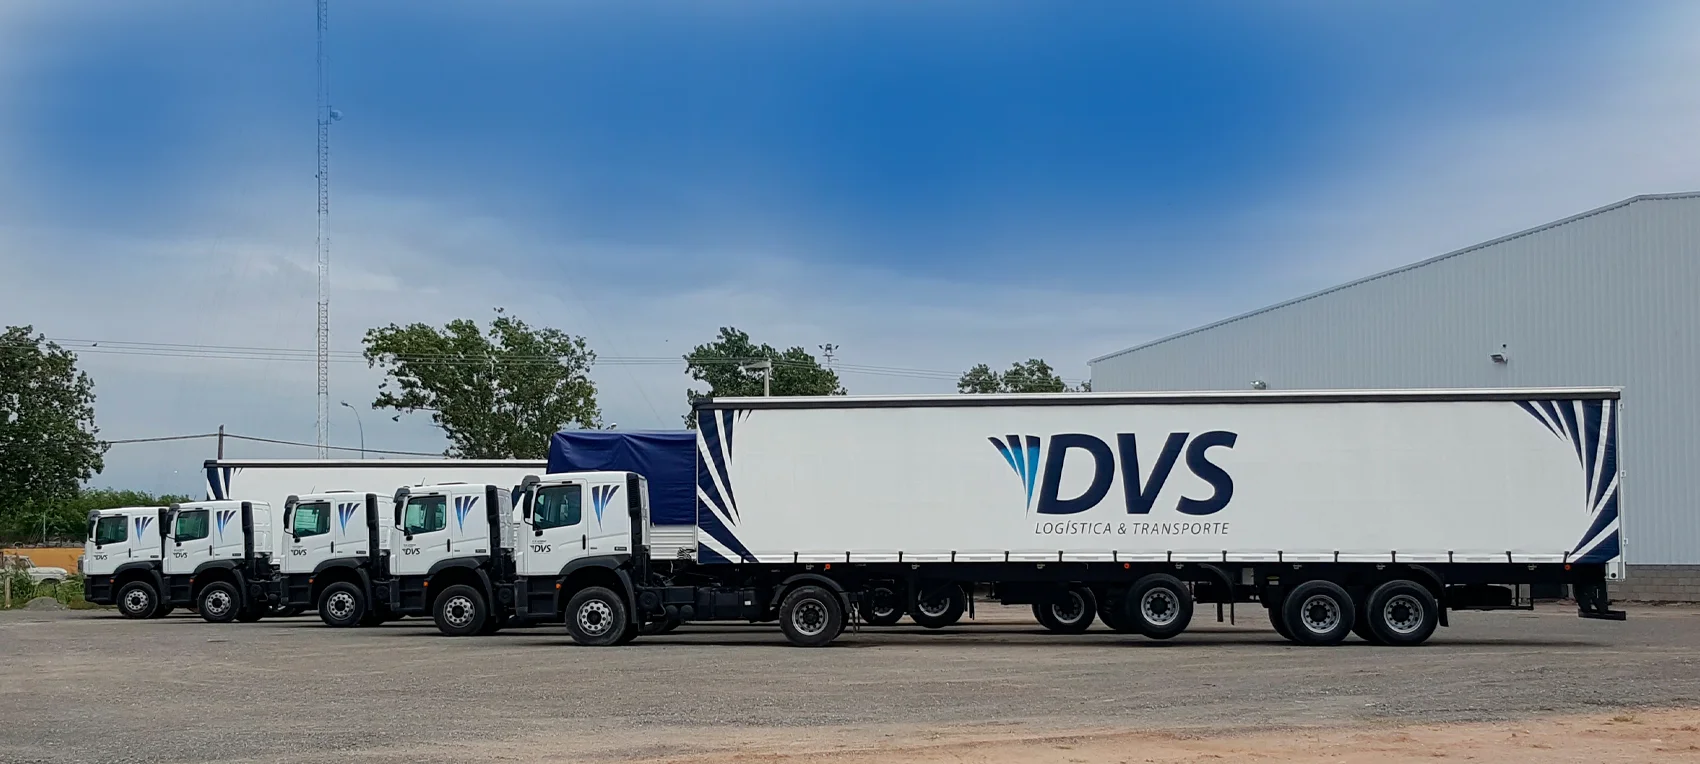 Nuestra misión - DVS Logística y Transporte